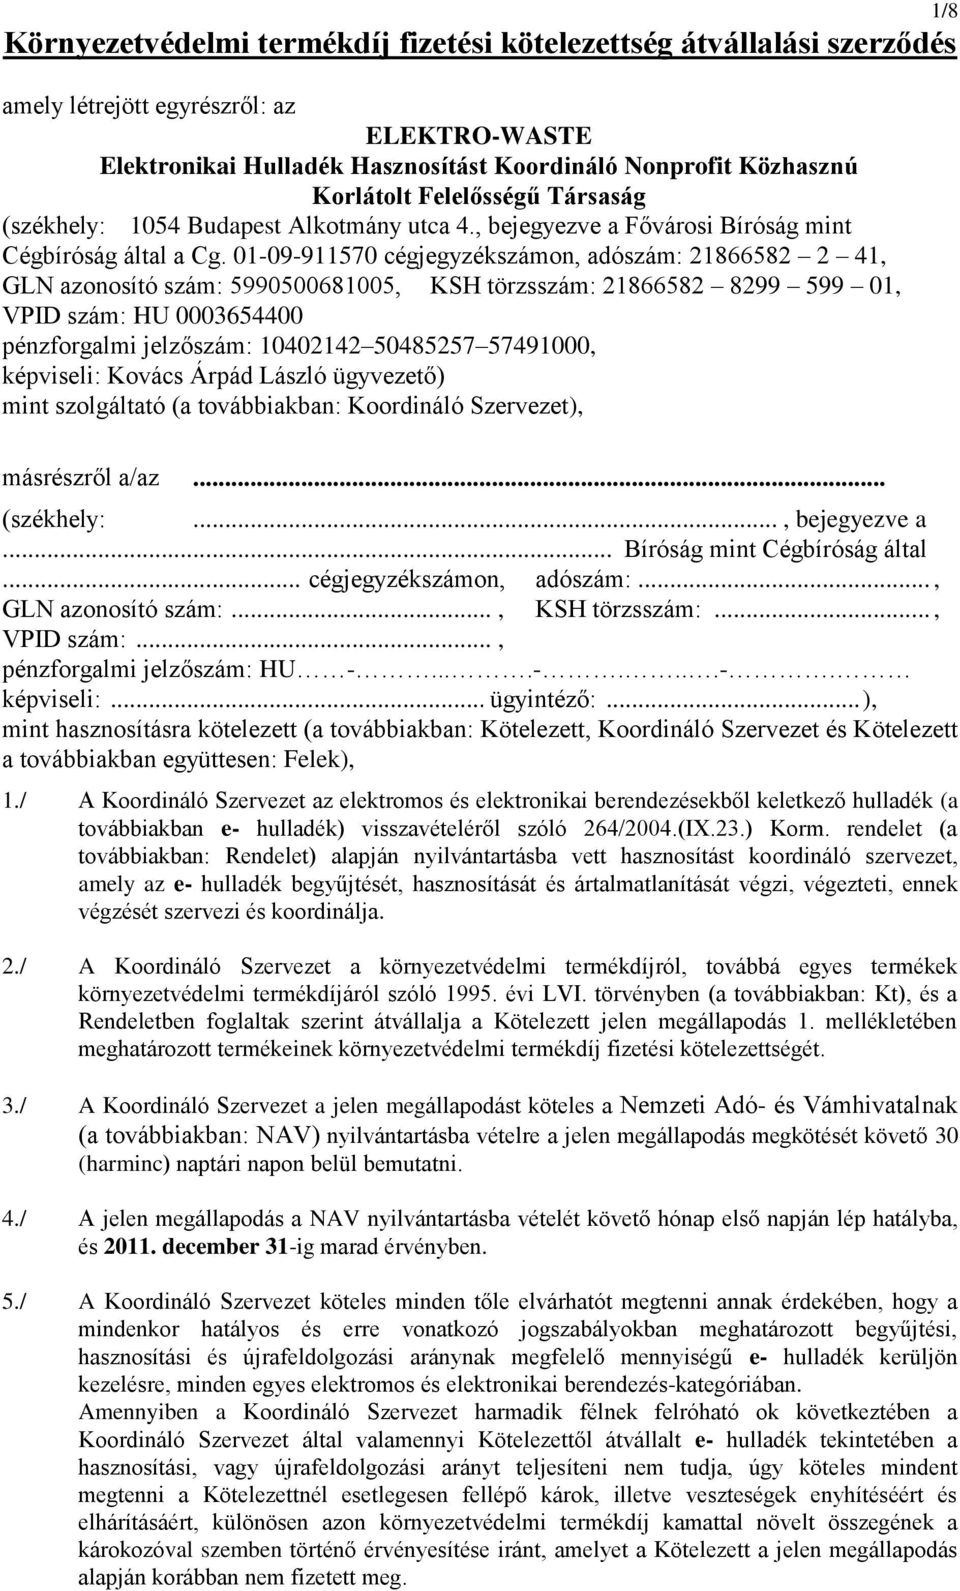 1/8 Környezetvédelmi termékdíj fizetési kötelezettség átvállalási szerződés  - PDF Ingyenes letöltés